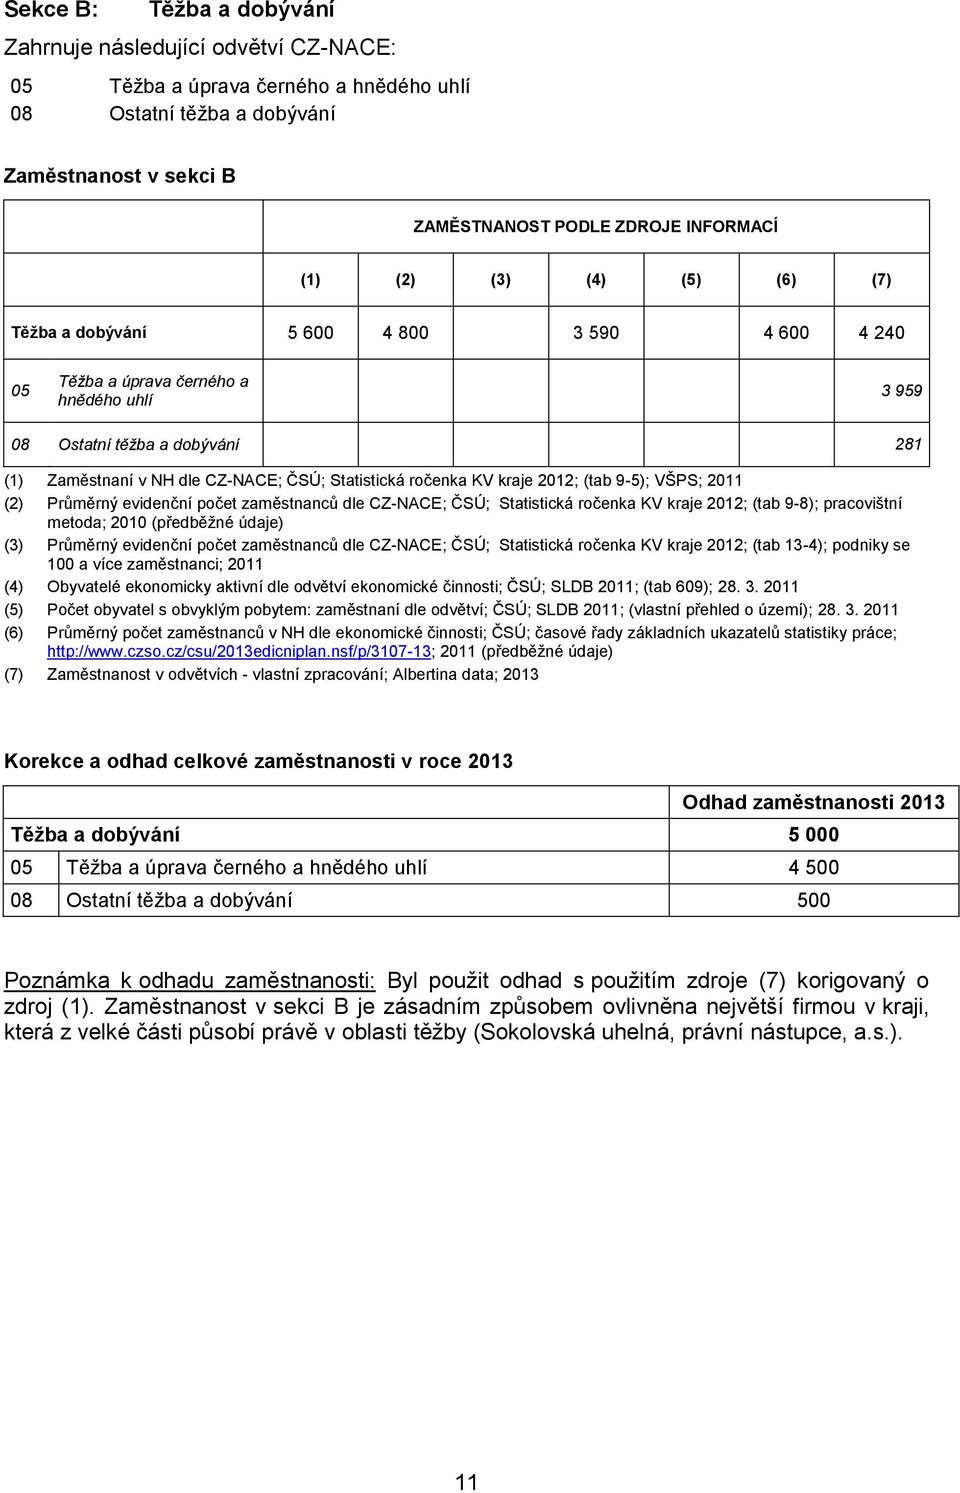 ročenka KV kraje 2012; (tab 9-5); VŠPS; 2011 (2) Průměrný evidenční počet zaměstnanců dle CZ-NACE; ČSÚ; Statistická ročenka KV kraje 2012; (tab 9-8); pracovištní metoda; 2010 (předběžné údaje) (3)